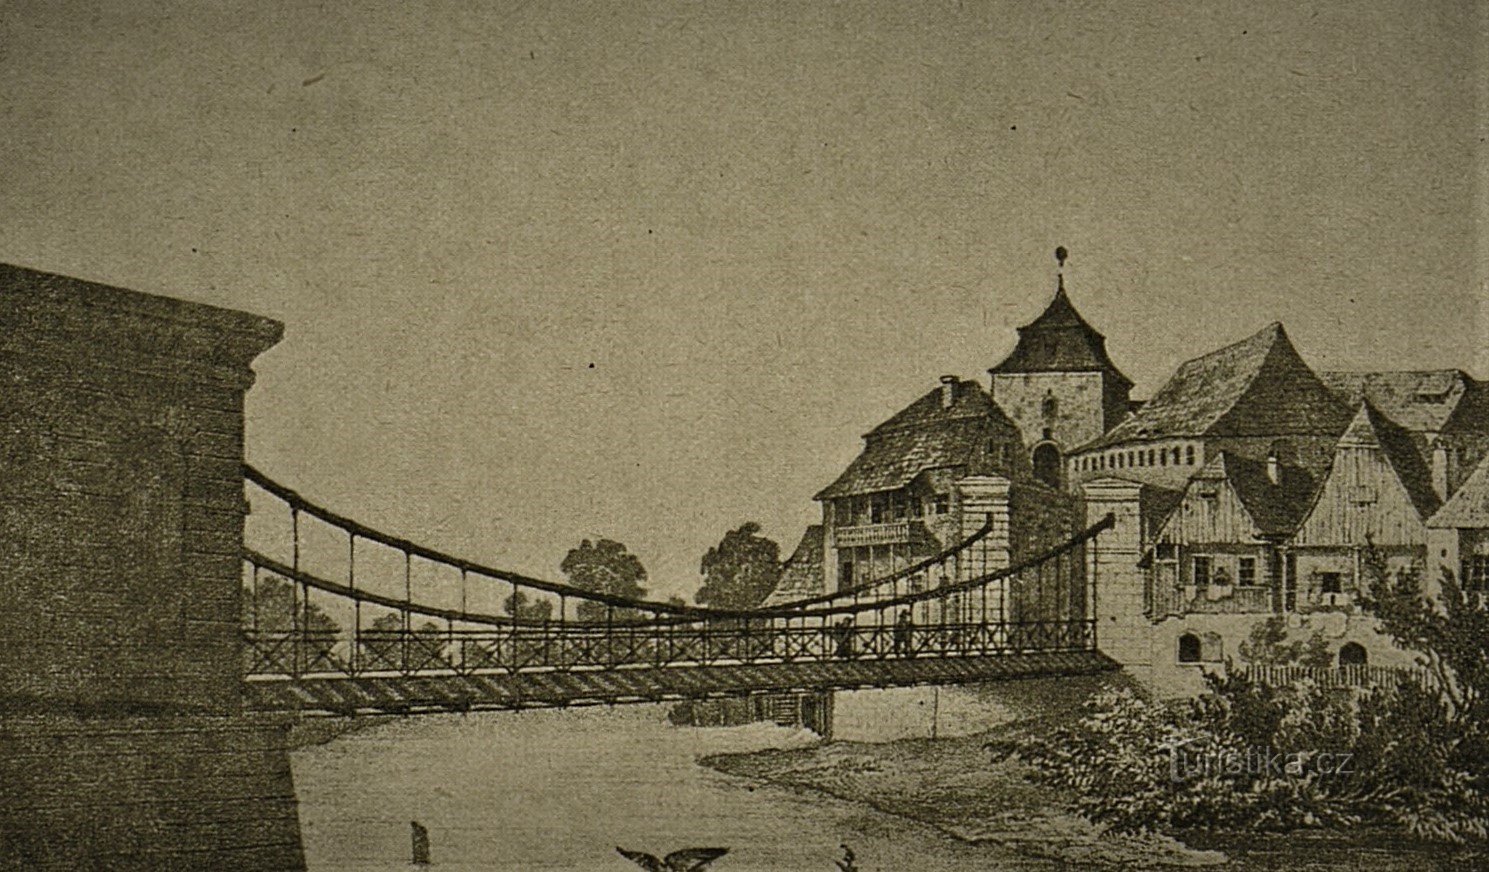 El puente sobre el Elba y el molino Podzidni detrás (Jaroměř, segunda mitad del siglo XIX)